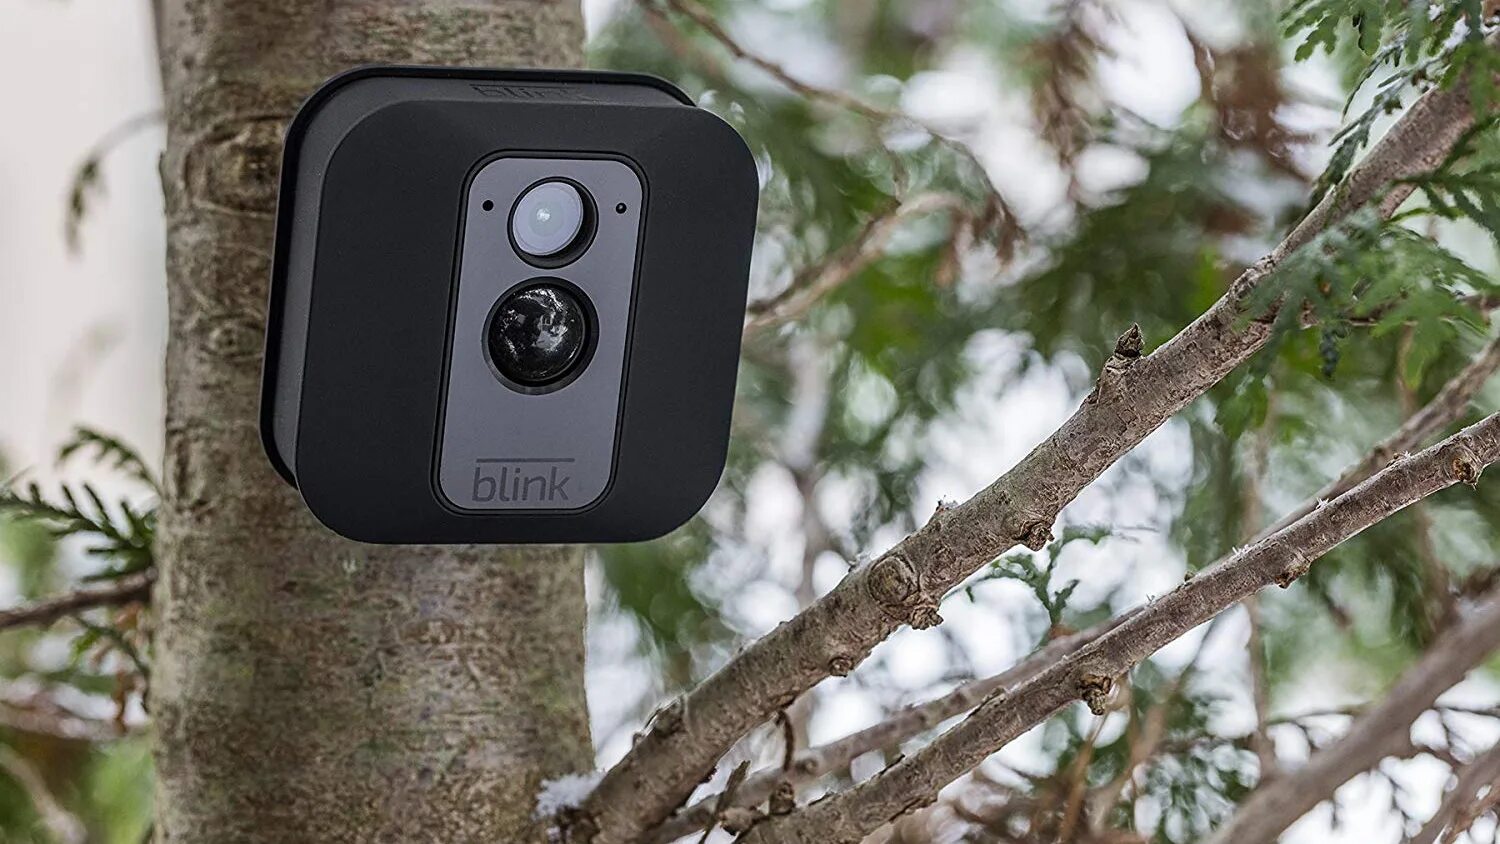 Линейка на камере телефона. Blink Outdoor Camera. Камера наблюдения беспроводная для улицы. Камера умный дом. Беспроводная всепогодная камера для леса.